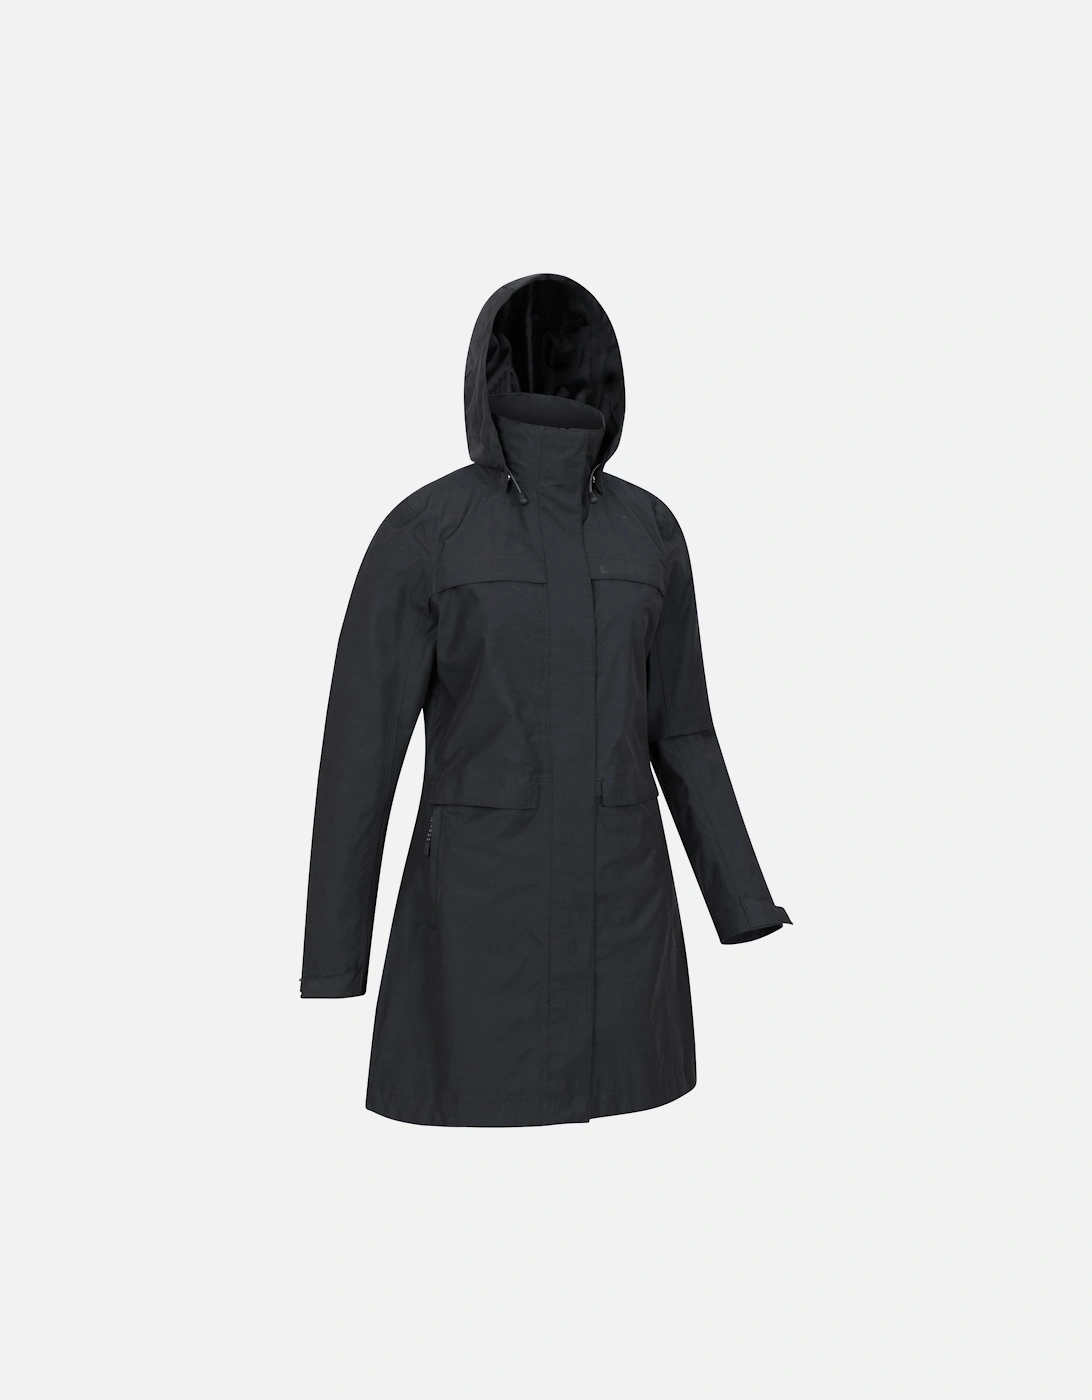 Womens/Ladies Cloudburst Textured Waterproof Jacket